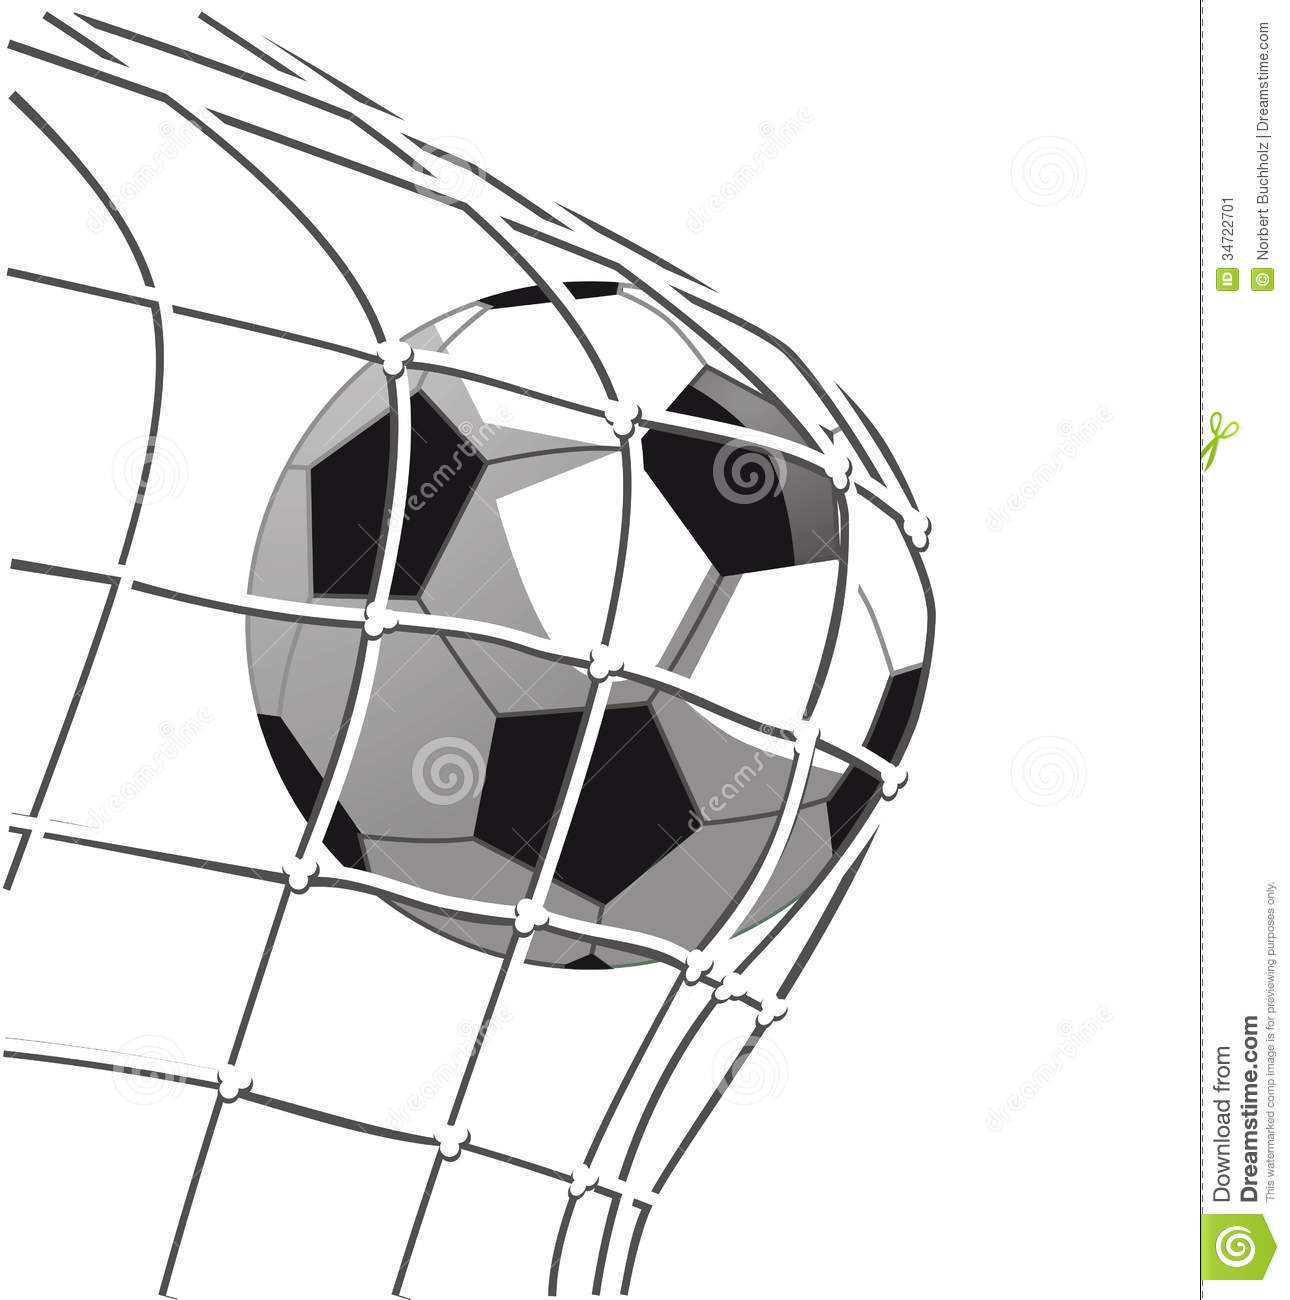 Goal Soccer Ball Clipart #1 - Soccer Goal Clip Art